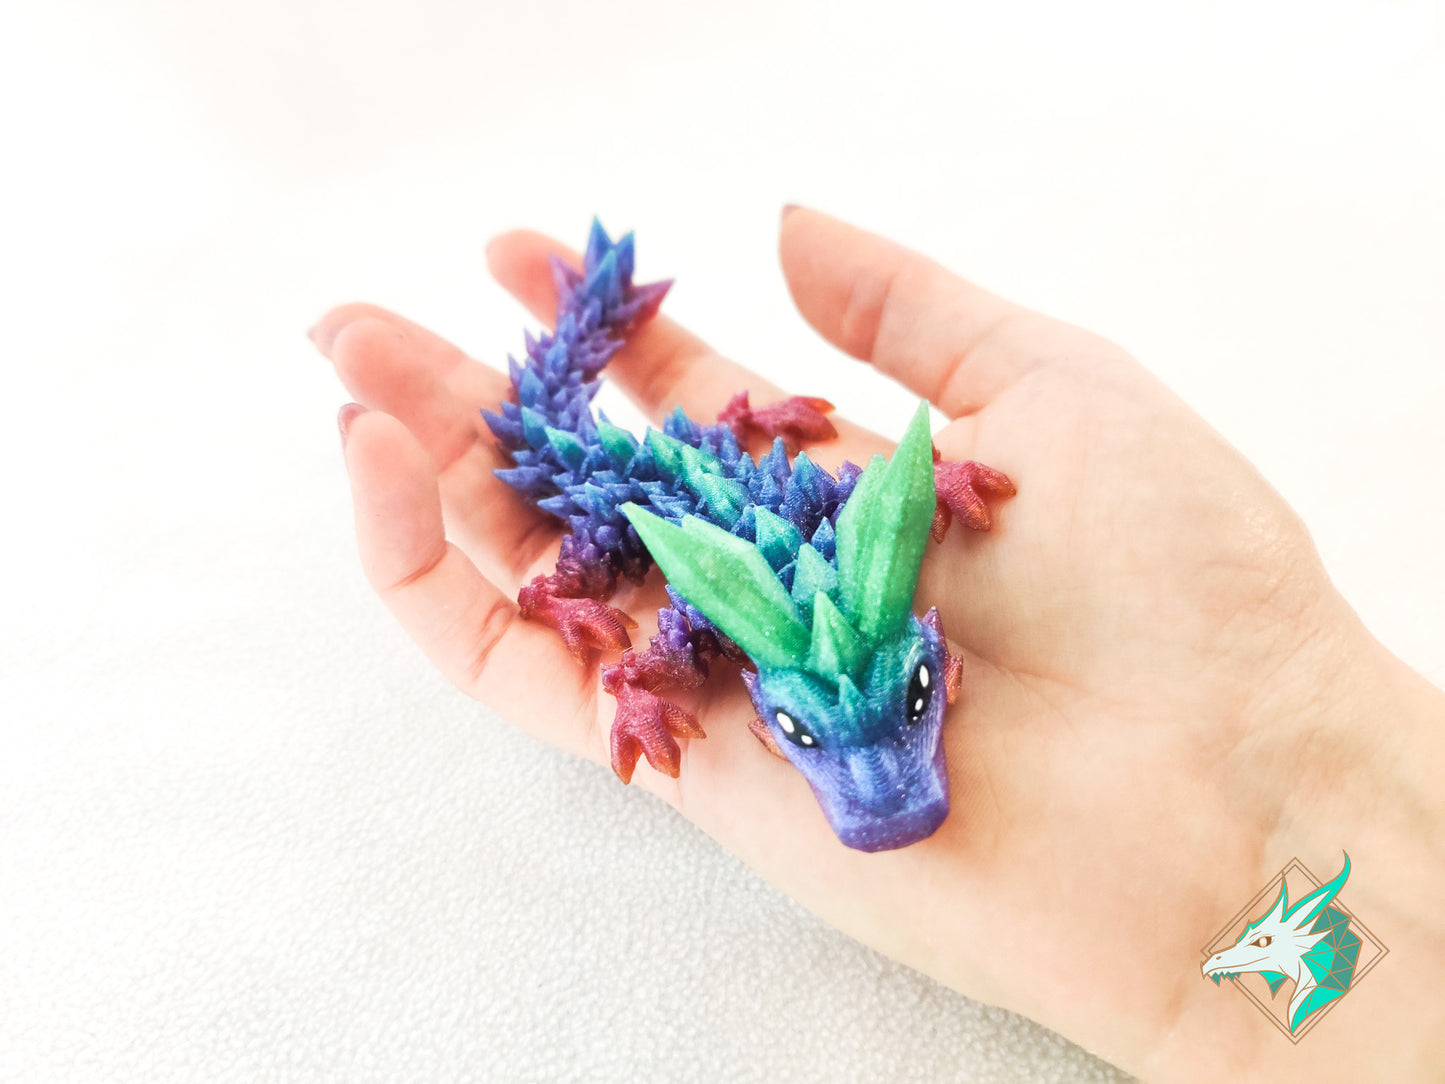 Hatchling Crystal Dragon - Pocket Size